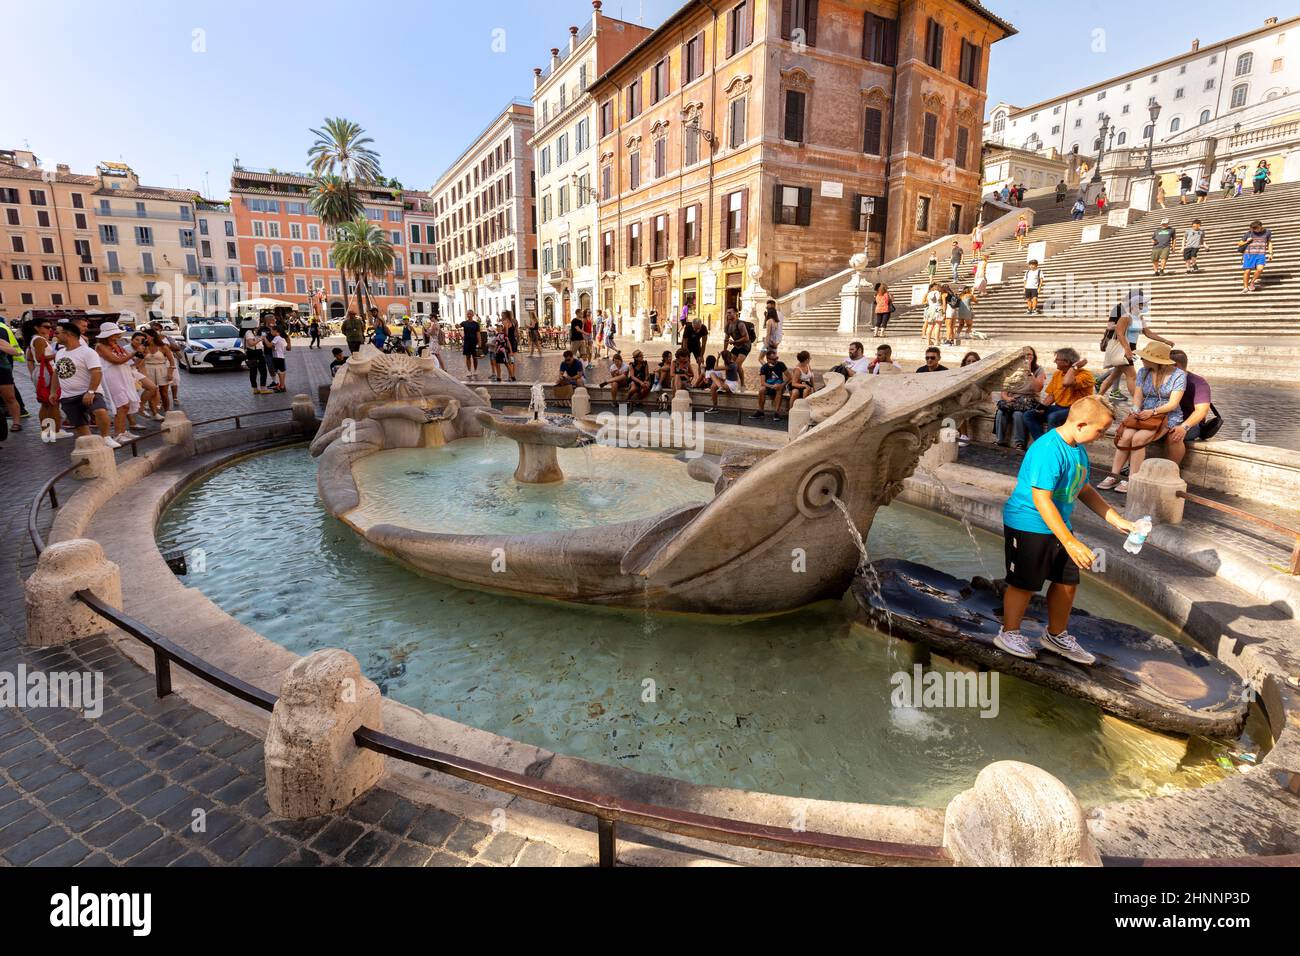 Les clients apprécient les escaliers espagnols sur la Piazza di Spagna à Rome. Les escaliers espagnols avec la fontaine Barcacia à Rome est une destination touristique célèbre Banque D'Images